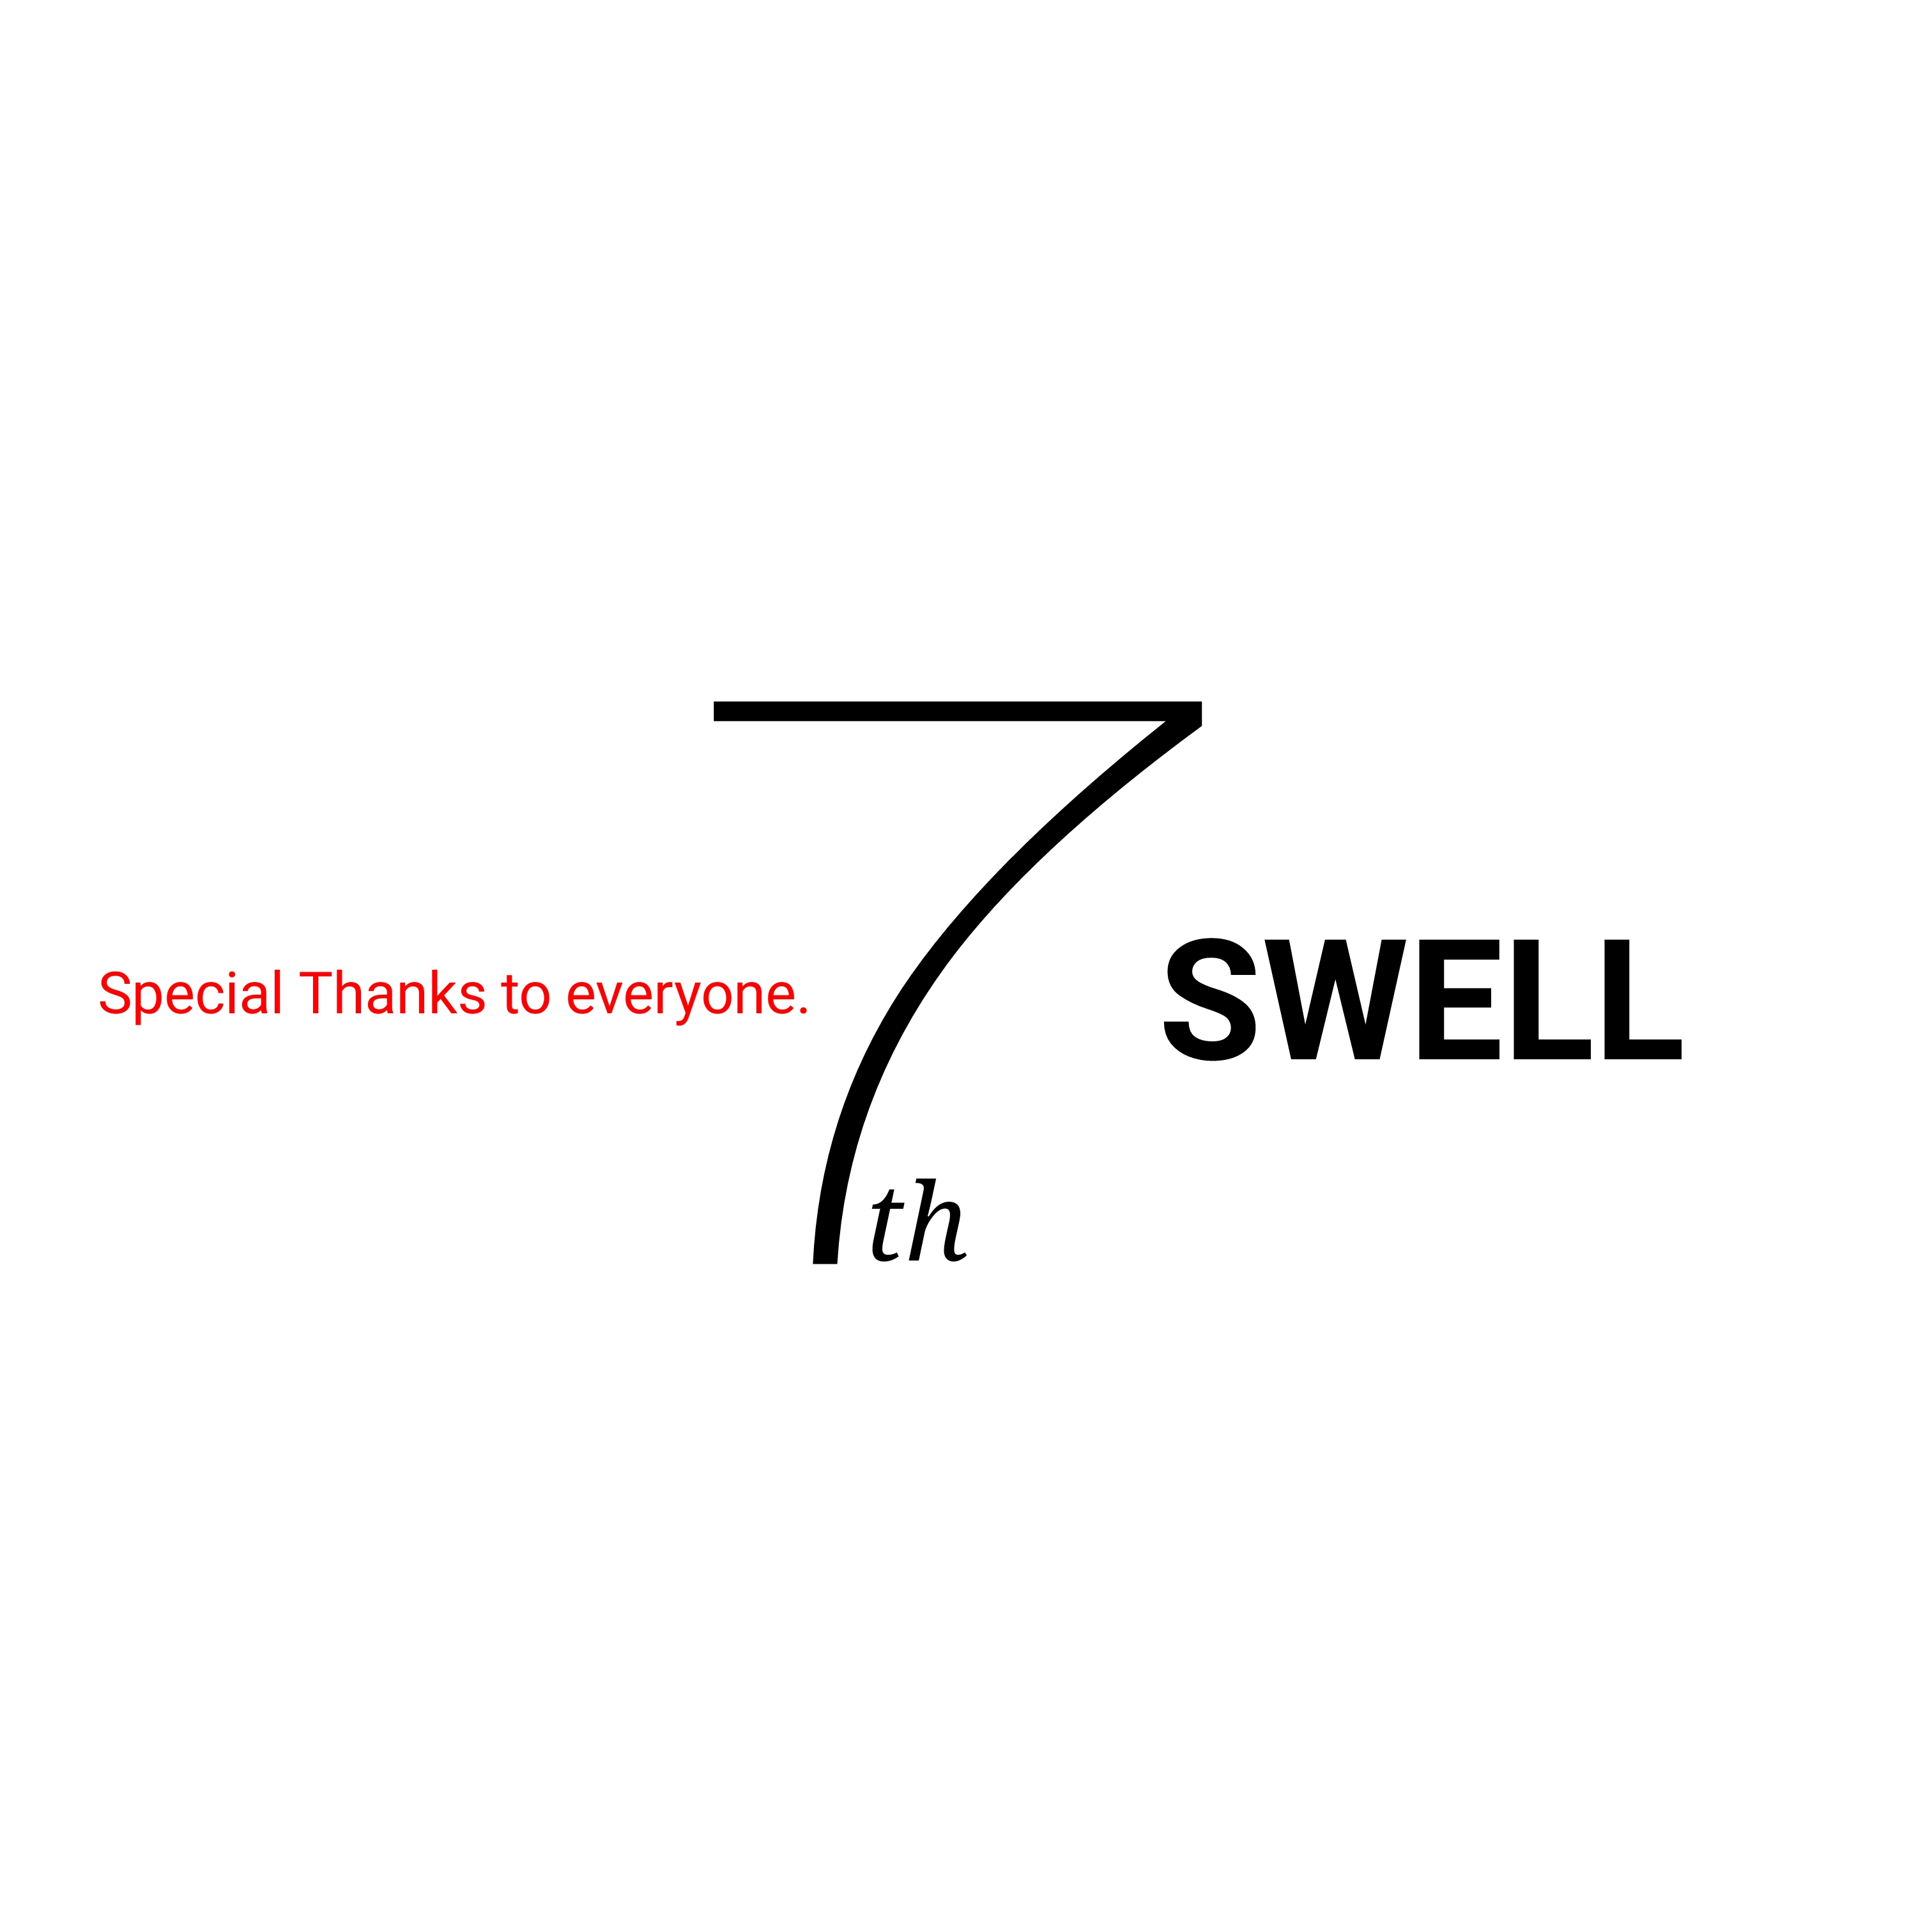 SWELL ７周年を迎えました。のアイキャッチ画像